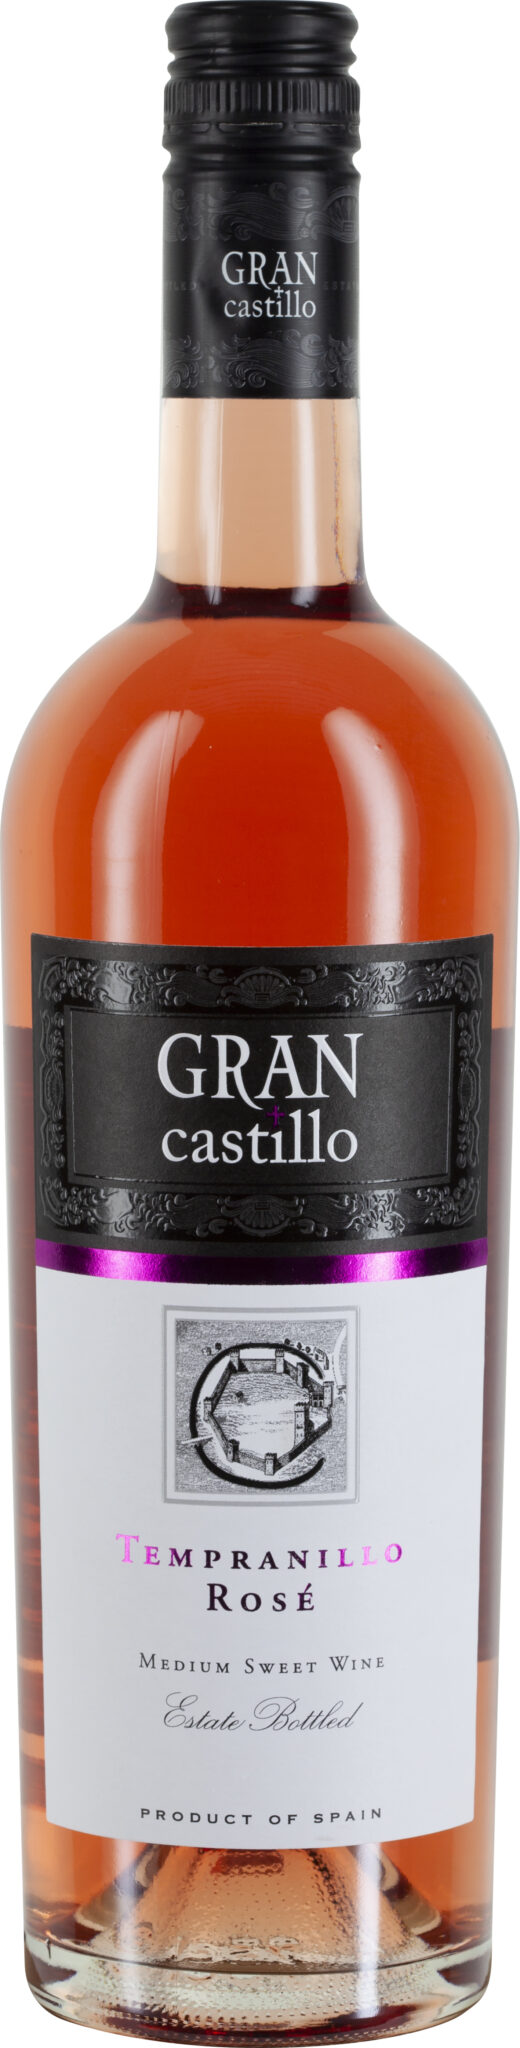 Gran Castillo, Tempranillo Rosé Vino Varietal